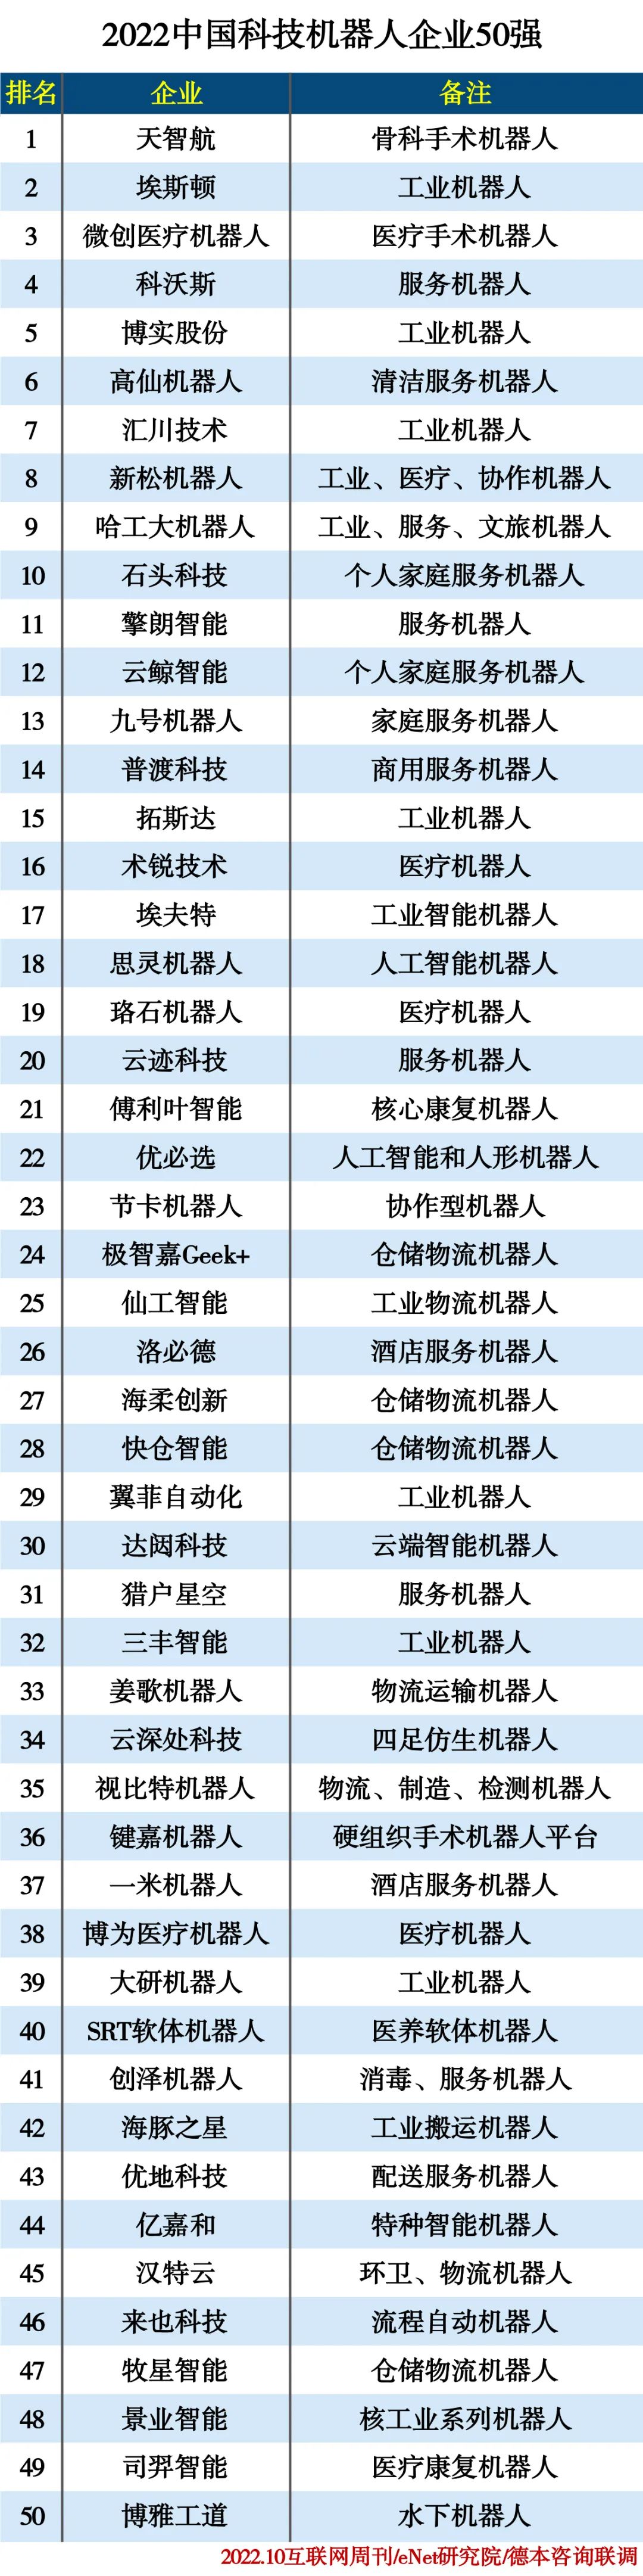 2022中国科技机器人企业TOP50